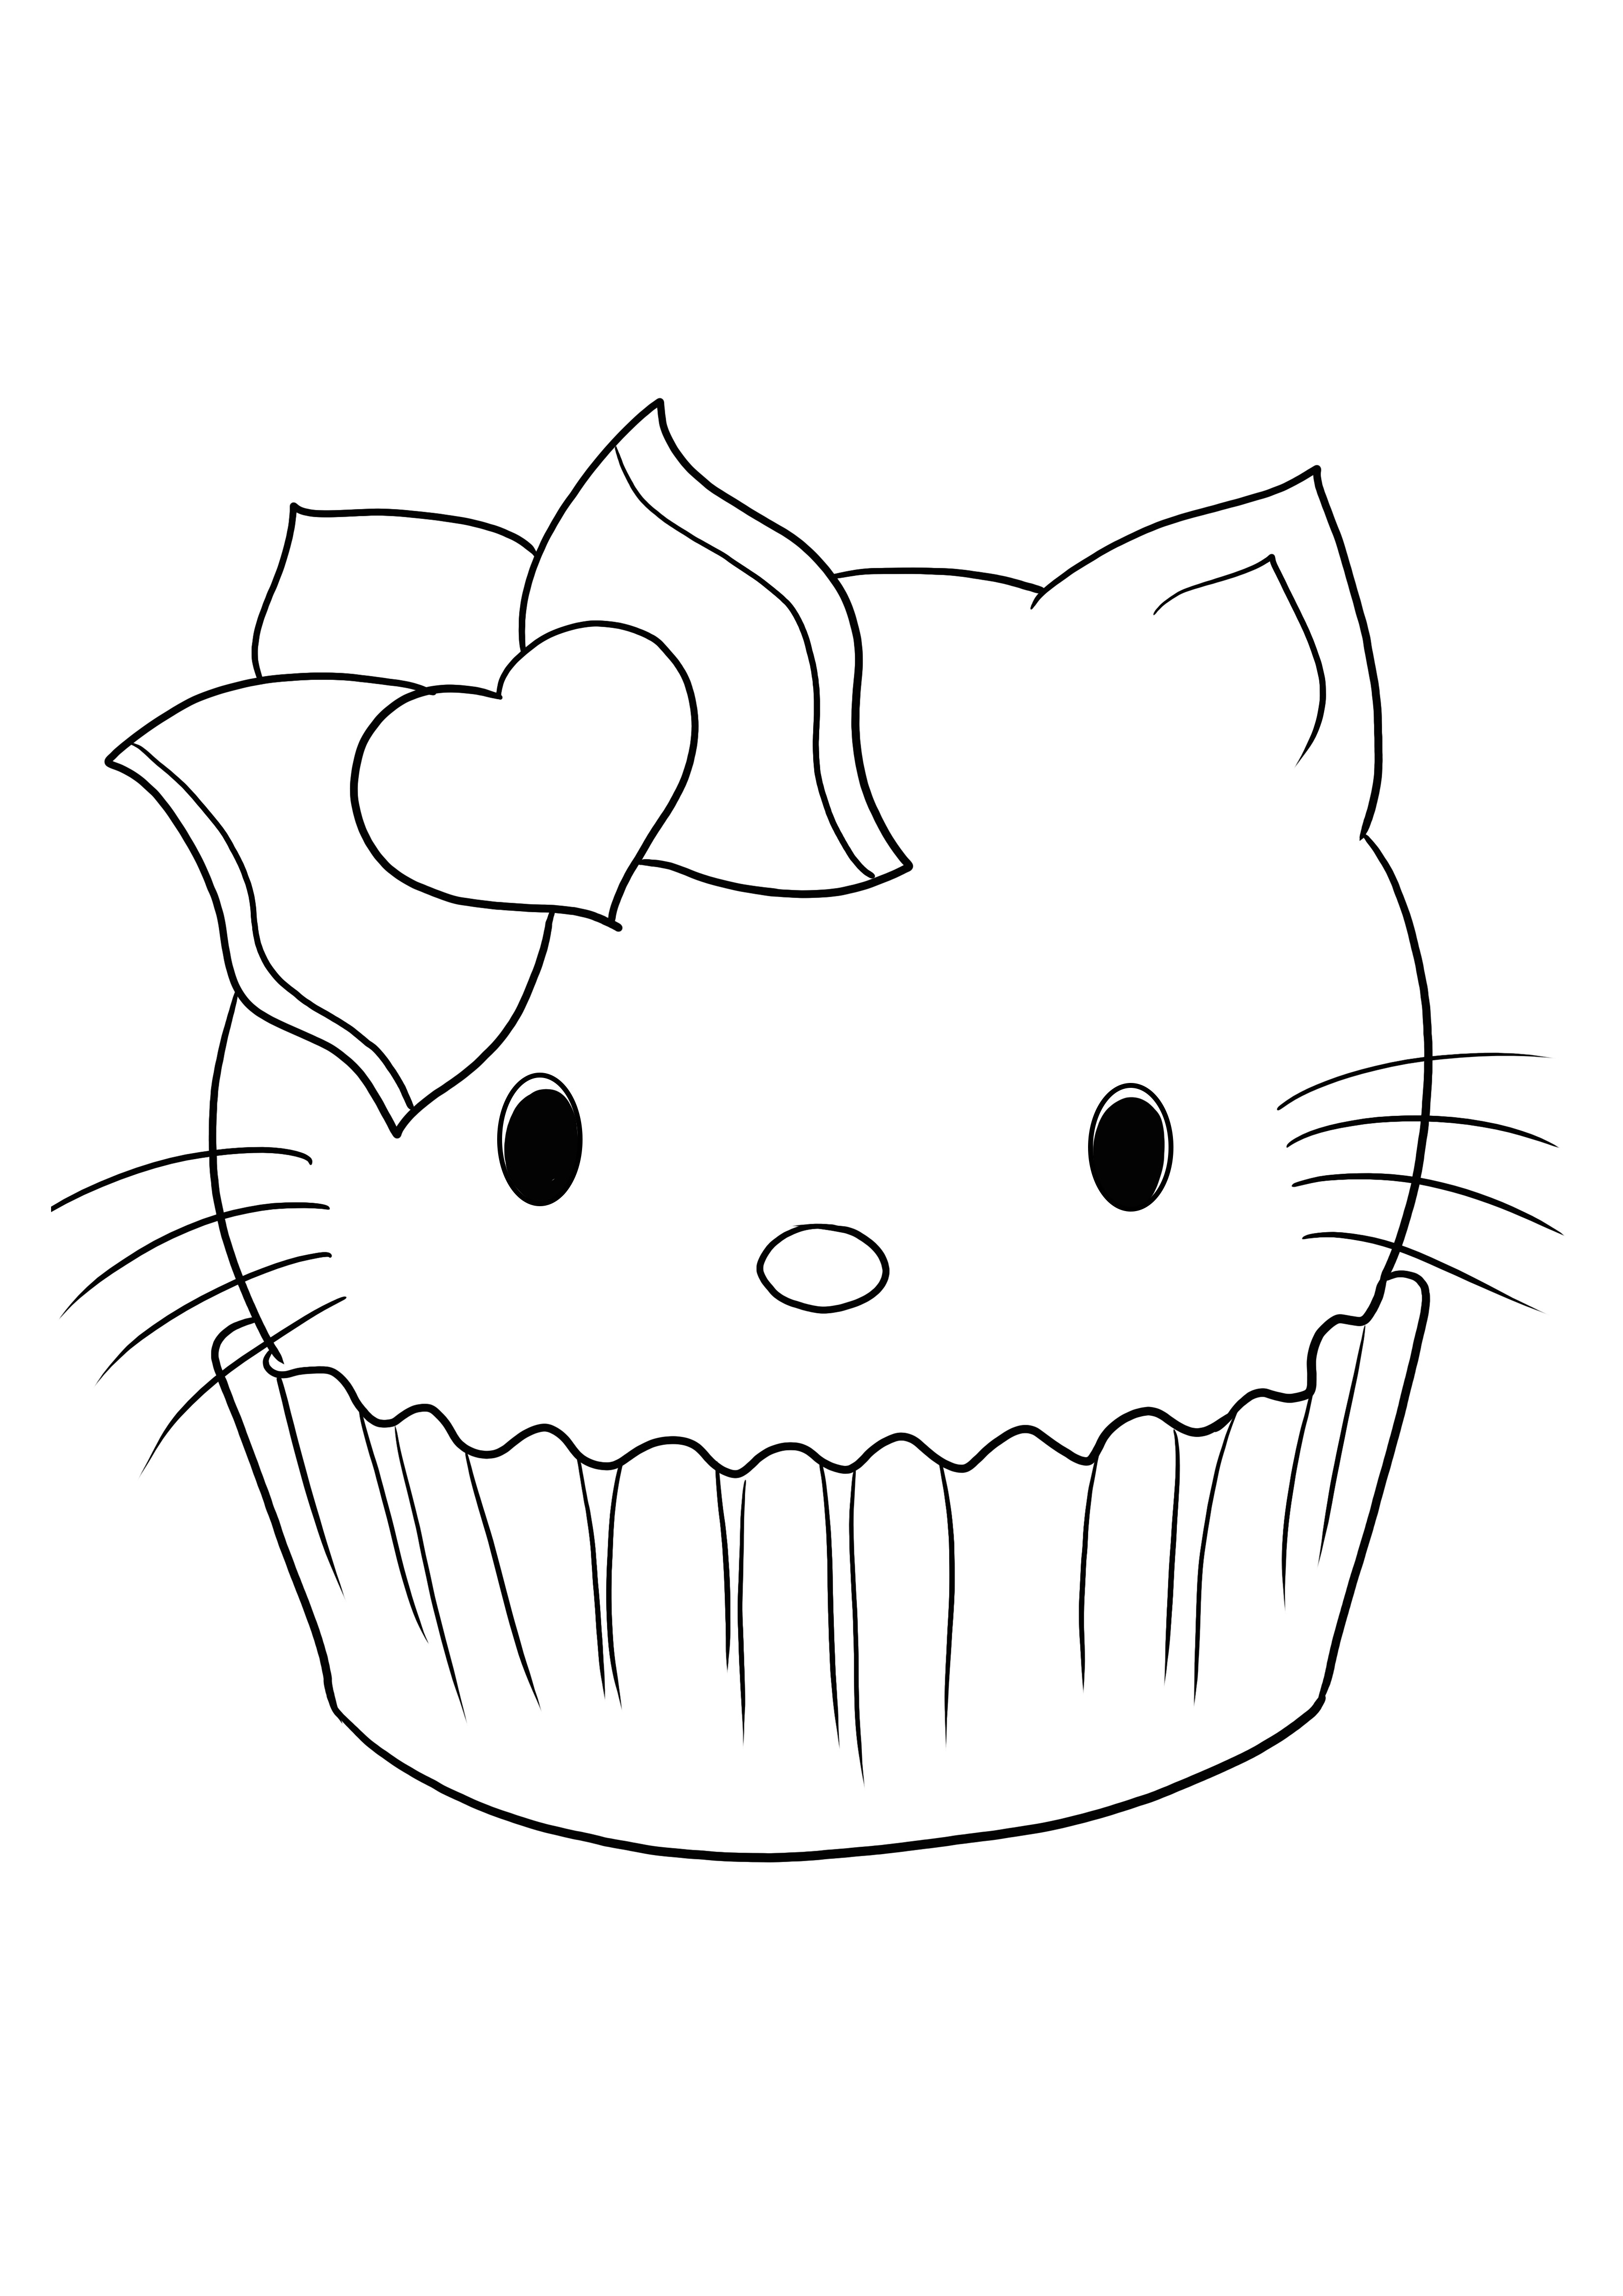 Hello Kitty in a Cupcake, einfach herunterzuladen oder auszudrucken und für Kinder auszumalen